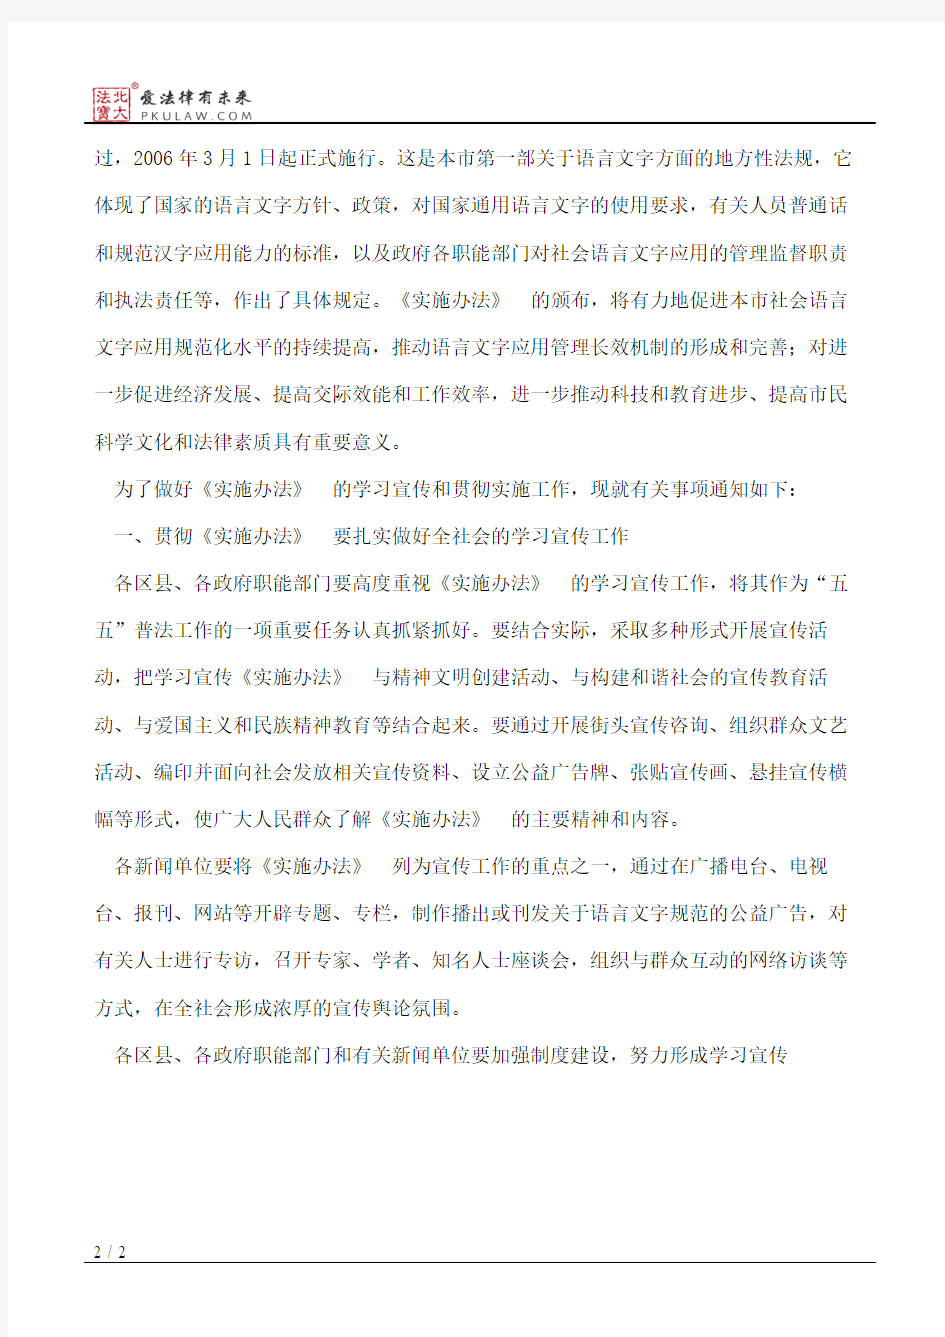 中共上海市委宣传部、上海市人大教科文卫委员会、上海市教育委员